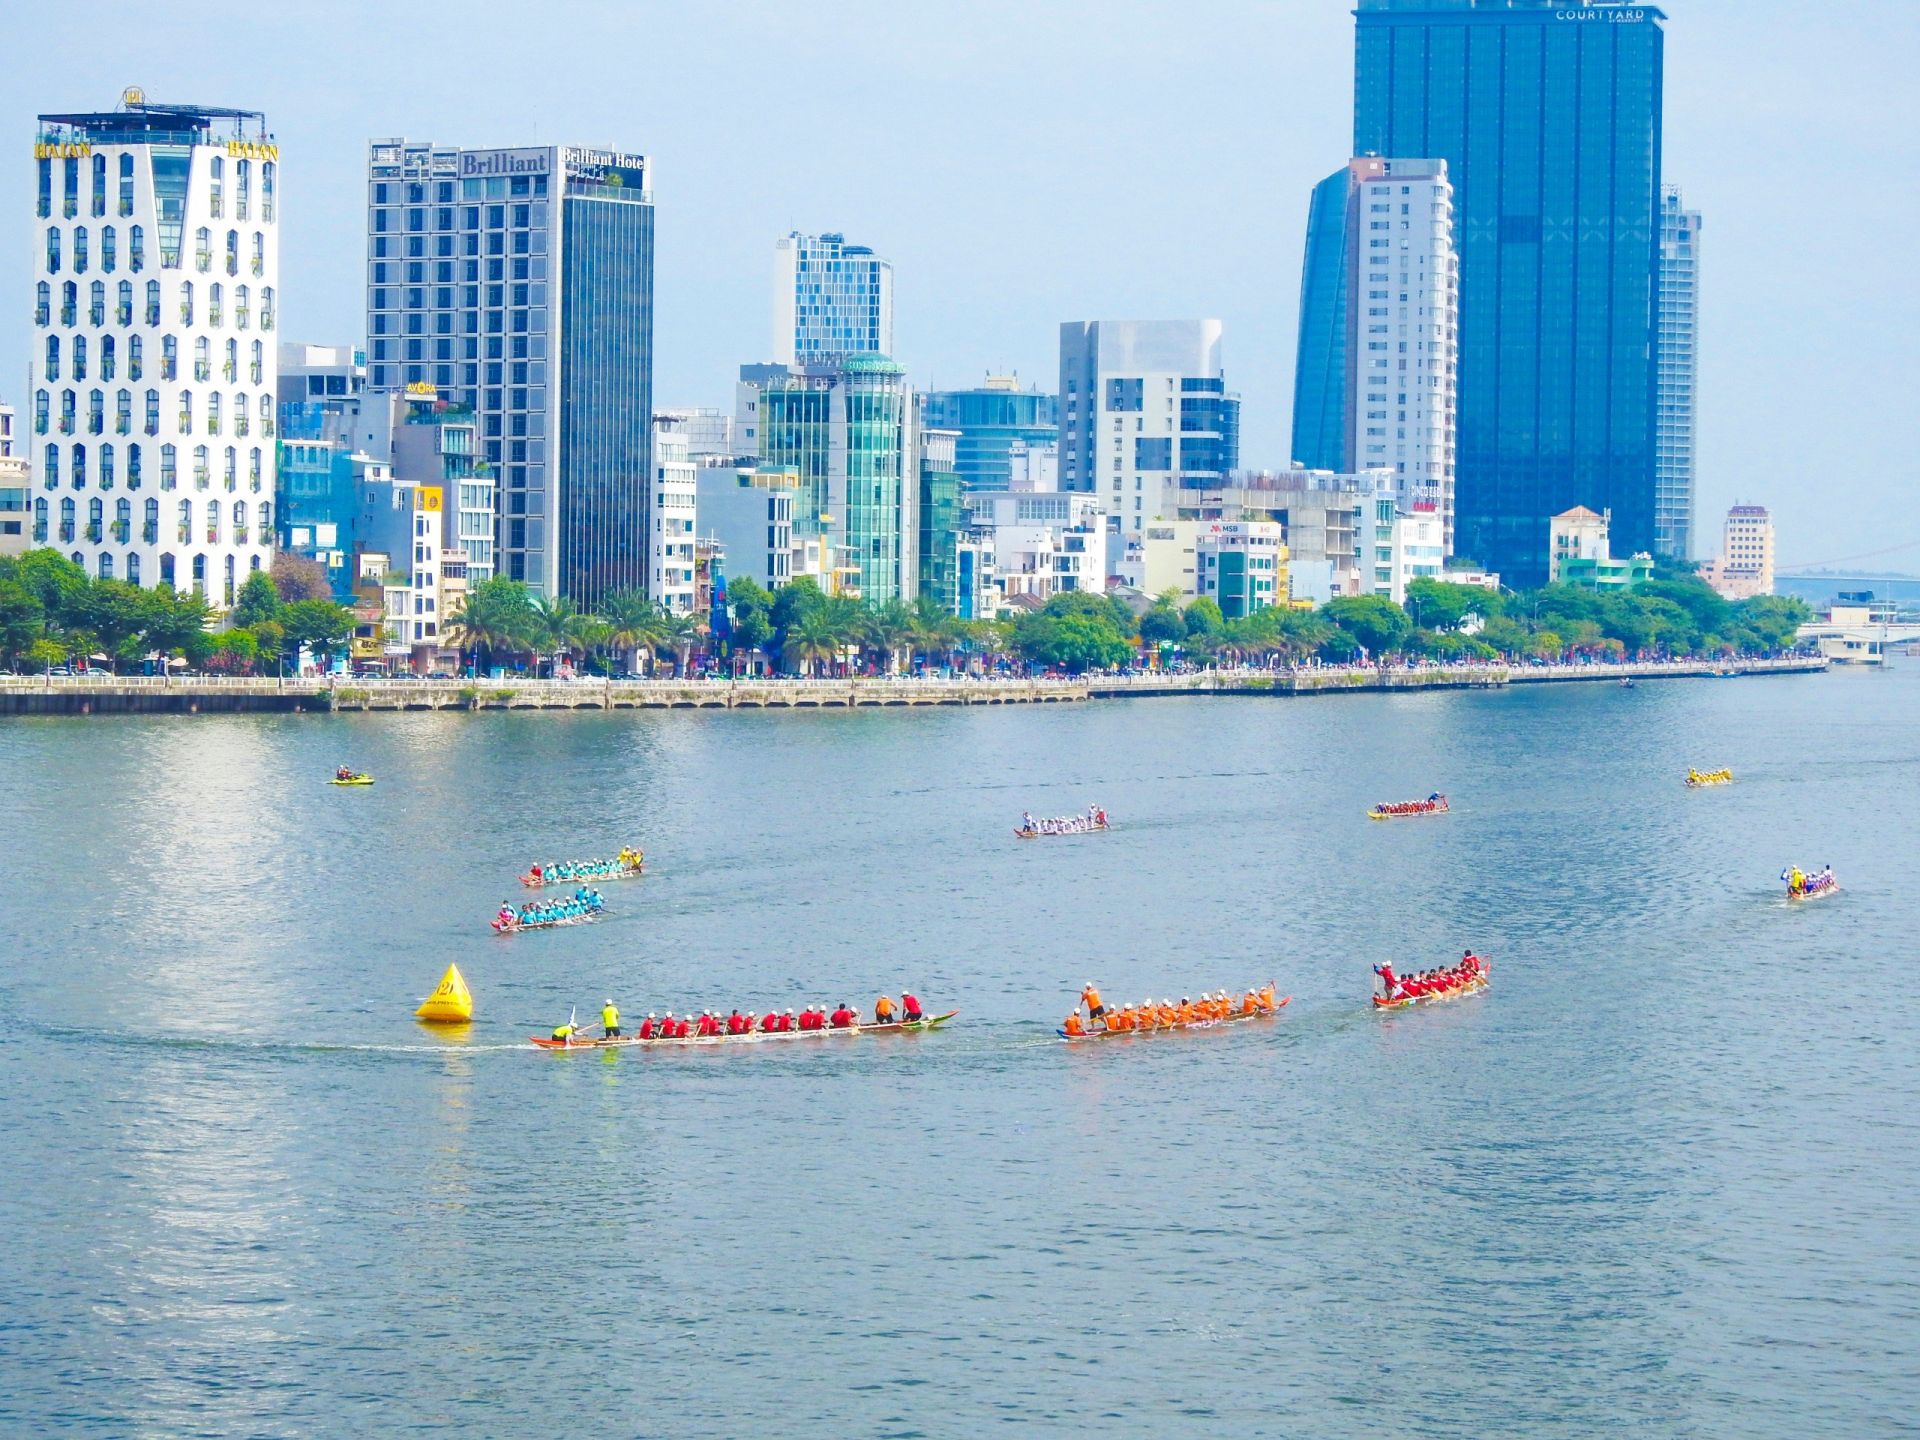 Giải đua thuyền truyền thống trở lại trên sông Hàn Đà Nẵng sau 6 năm gián đoạn. Ảnh: Thanh Tùng.